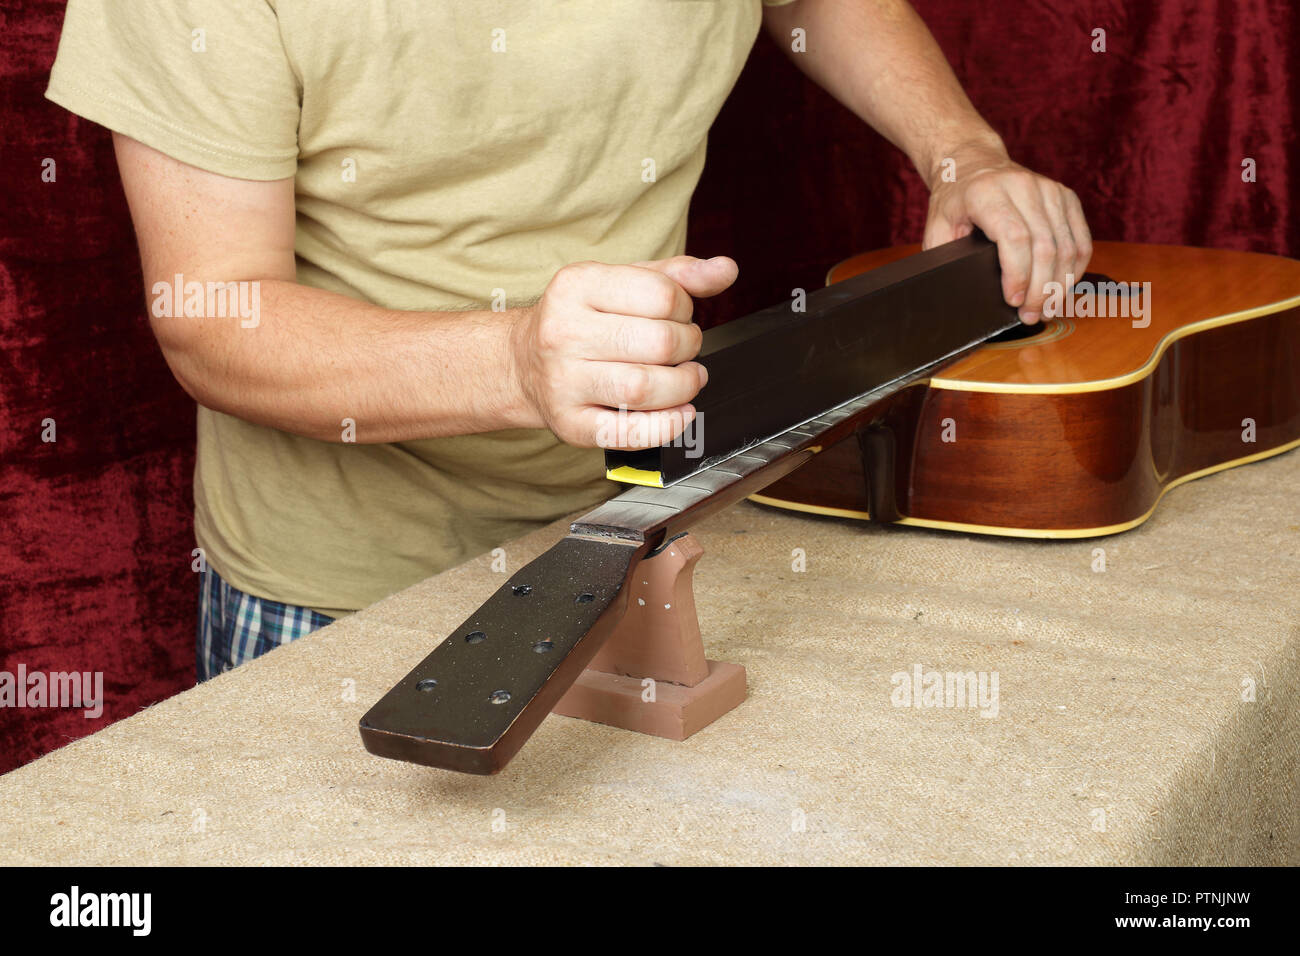 Musical Instrument Gitarre Reparatur und Service Mitarbeiter schleift nat Holz Gitarre Hals Bünde. Stockfoto